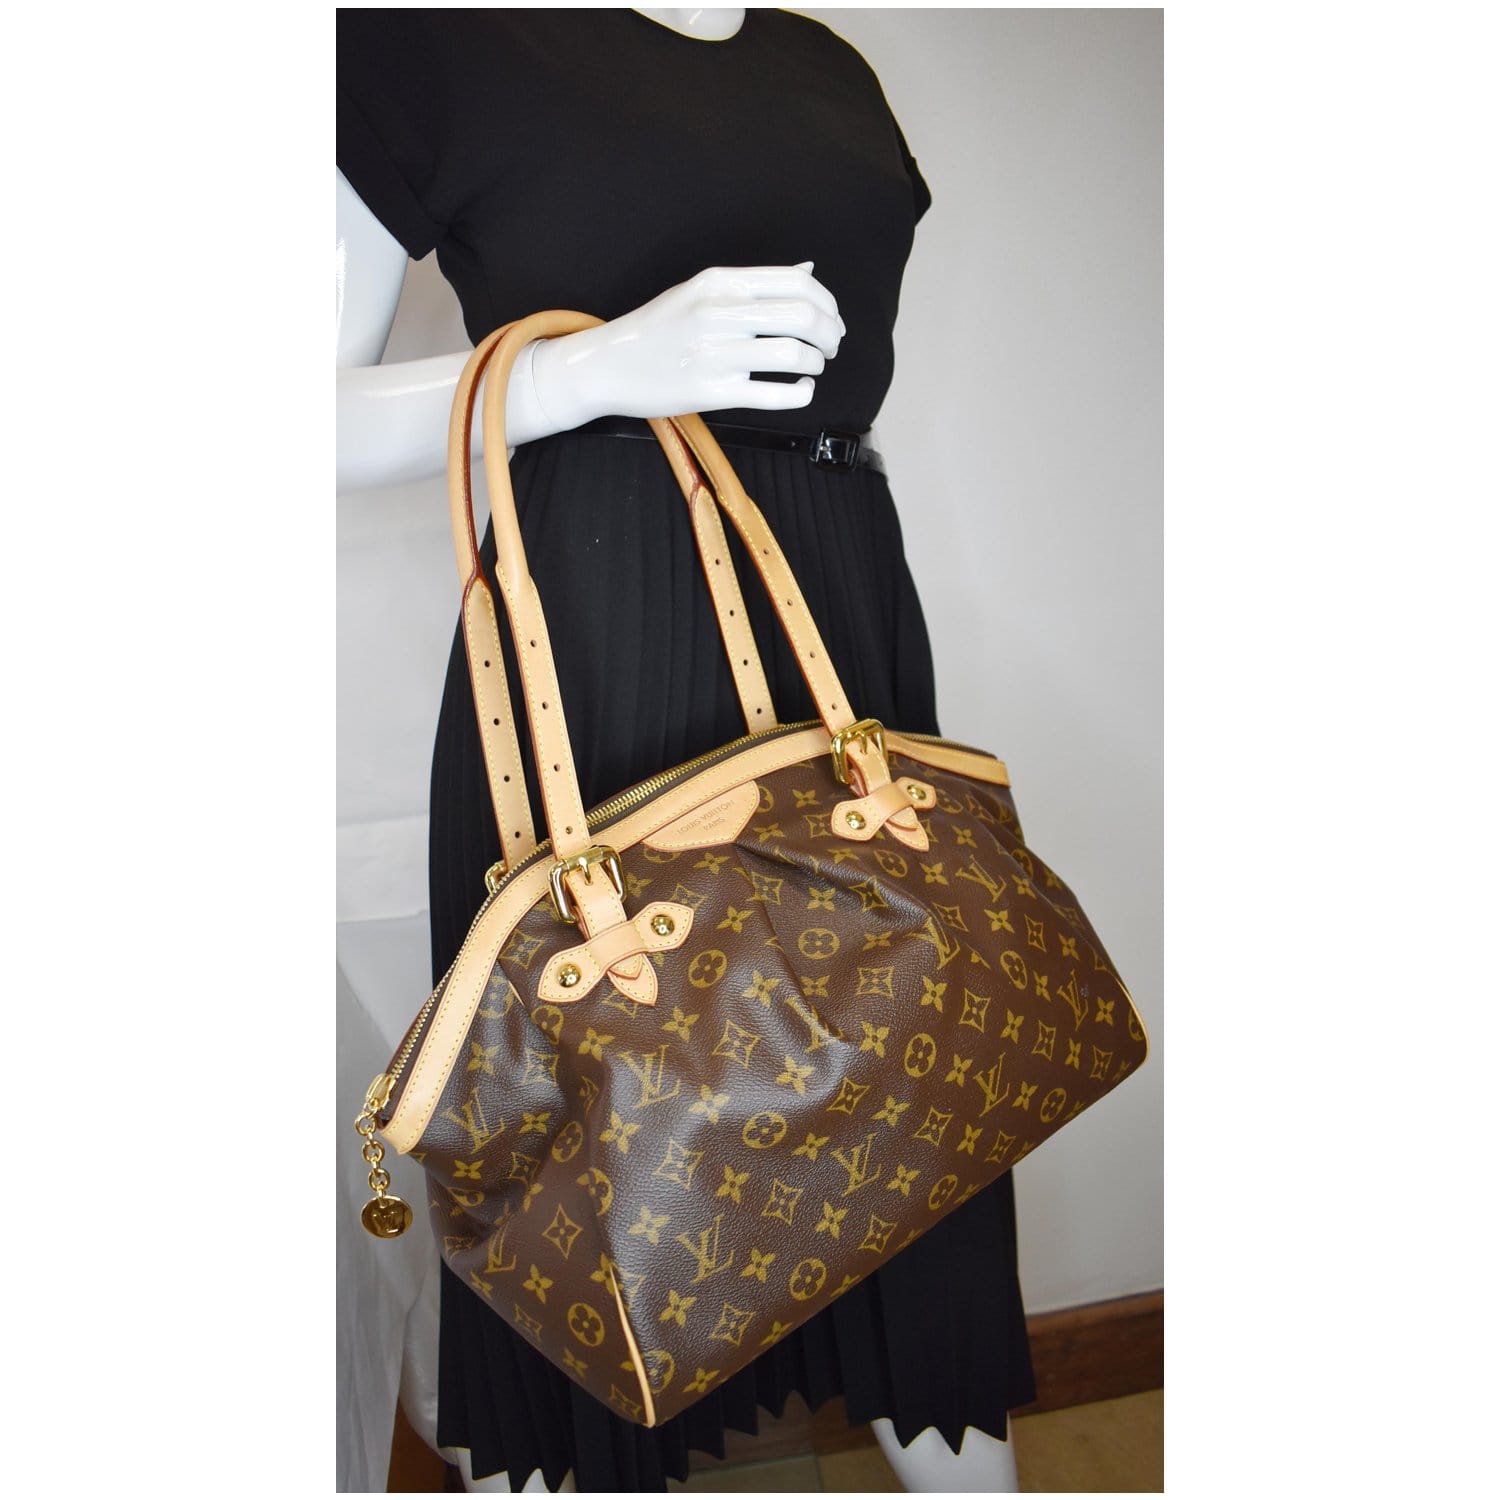 What's inside my bag? Louis Vuitton Tivoli GM Handbag - Showing